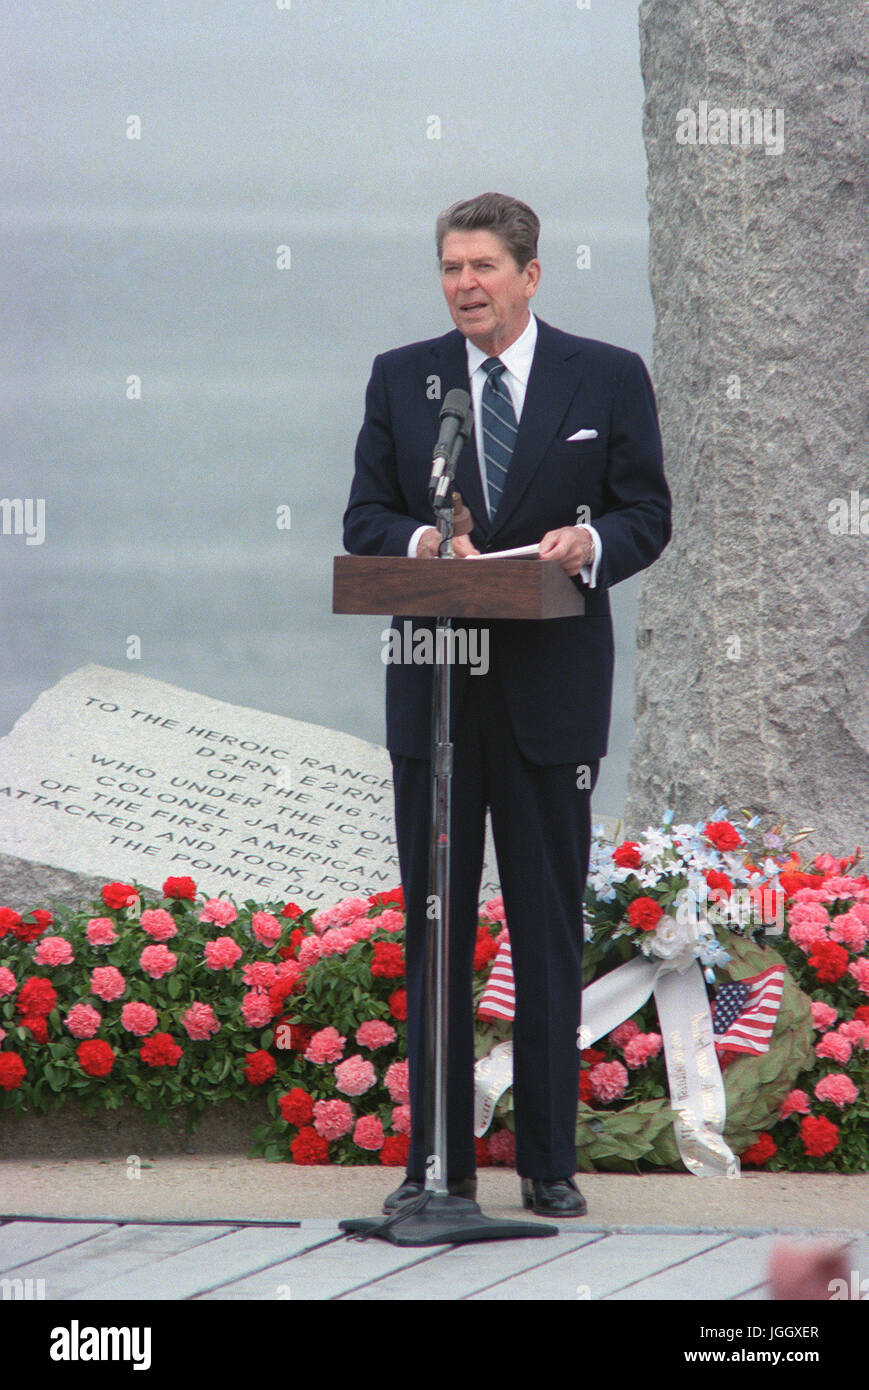 Le président Ronald Reagan parle au cours d'une cérémonie commémorant le 40e anniversaire du jour J, l'invasion de l'Europe. Banque D'Images